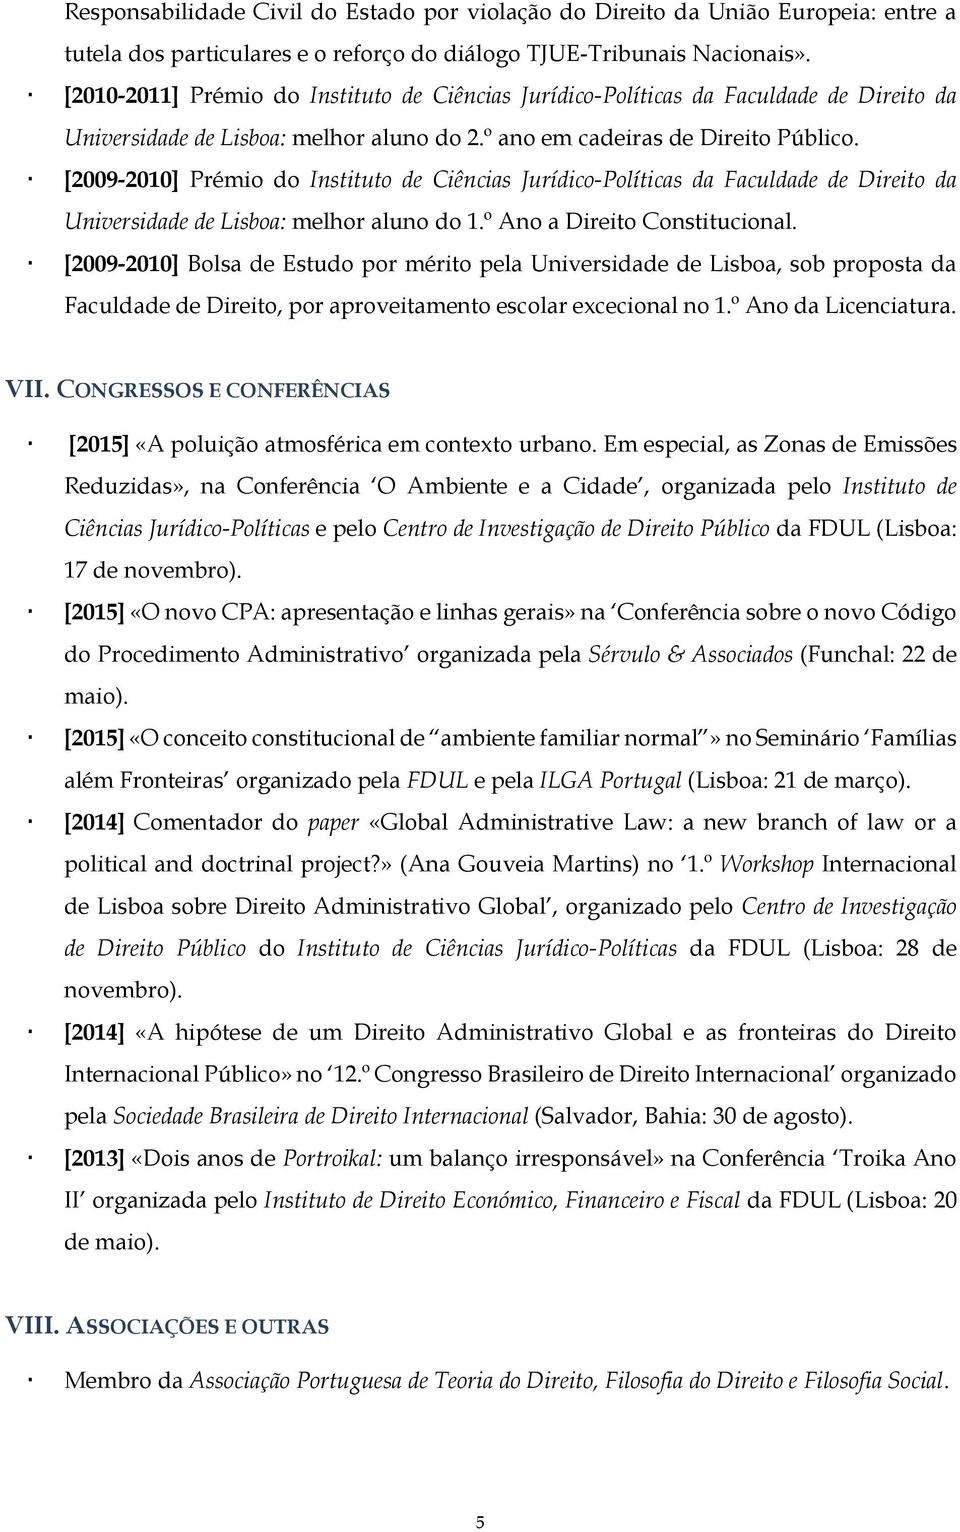 [2009-2010] Prémio do Instituto de Ciências Jurídico-Políticas da Faculdade de Direito da Universidade de Lisboa: melhor aluno do 1.º Ano a Direito Constitucional.